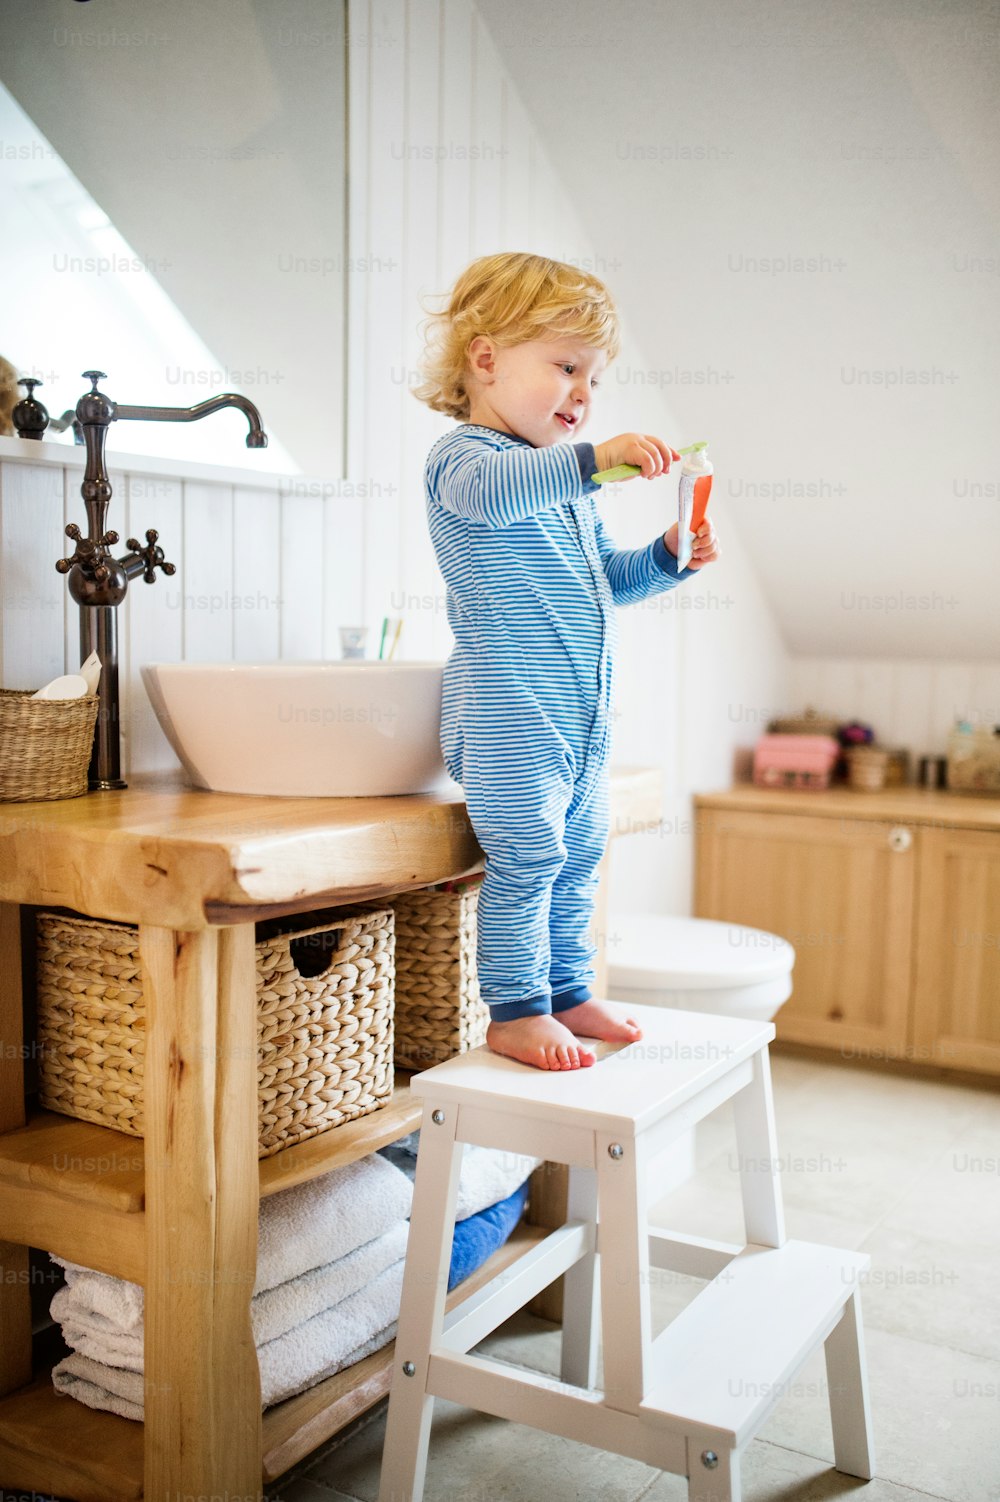 Süßes Kleinkind, das sich im Badezimmer die Zähne putzt. Kleiner Junge auf einem Hocker stehend.